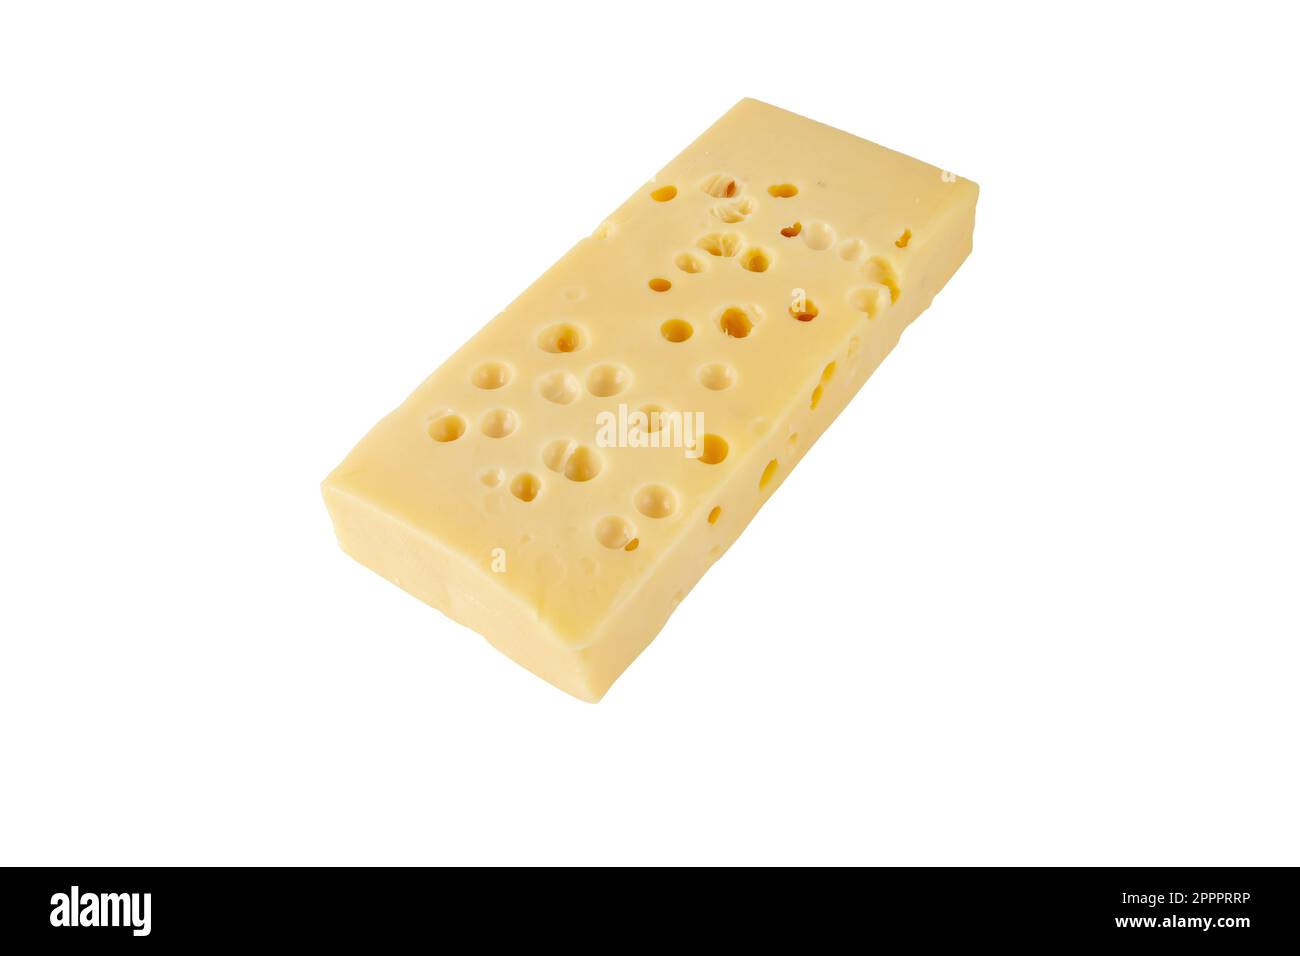 Formaggio svizzero isolato su bianco. Pezzo giallo Emmental o emmentaler con occhi o fori rotondi. Foto Stock